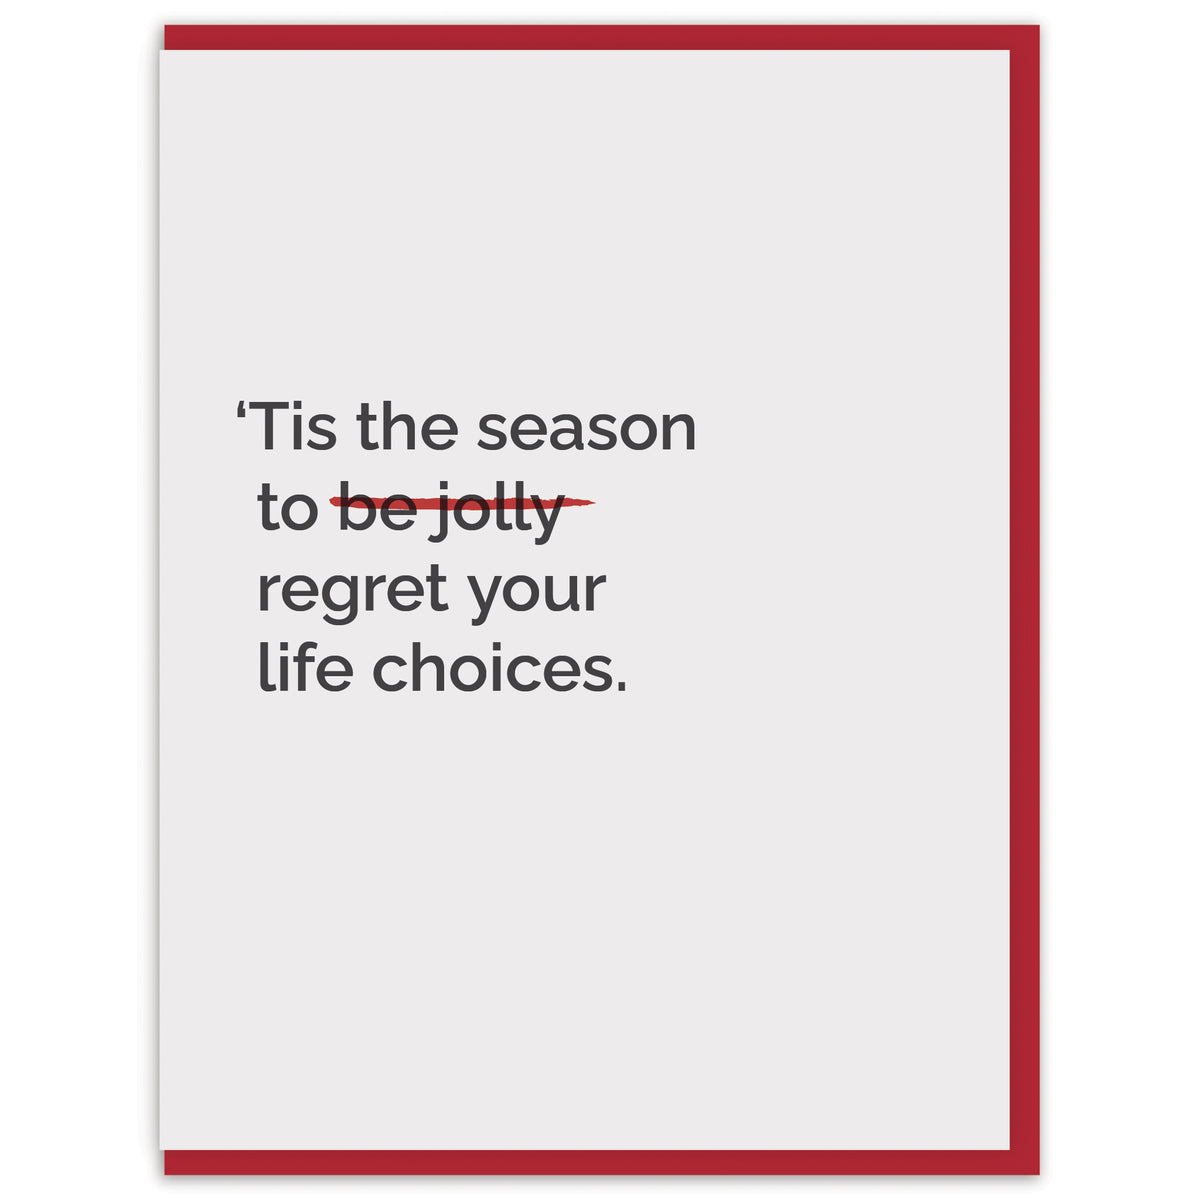 ‘Tis the season to regret your life choices.